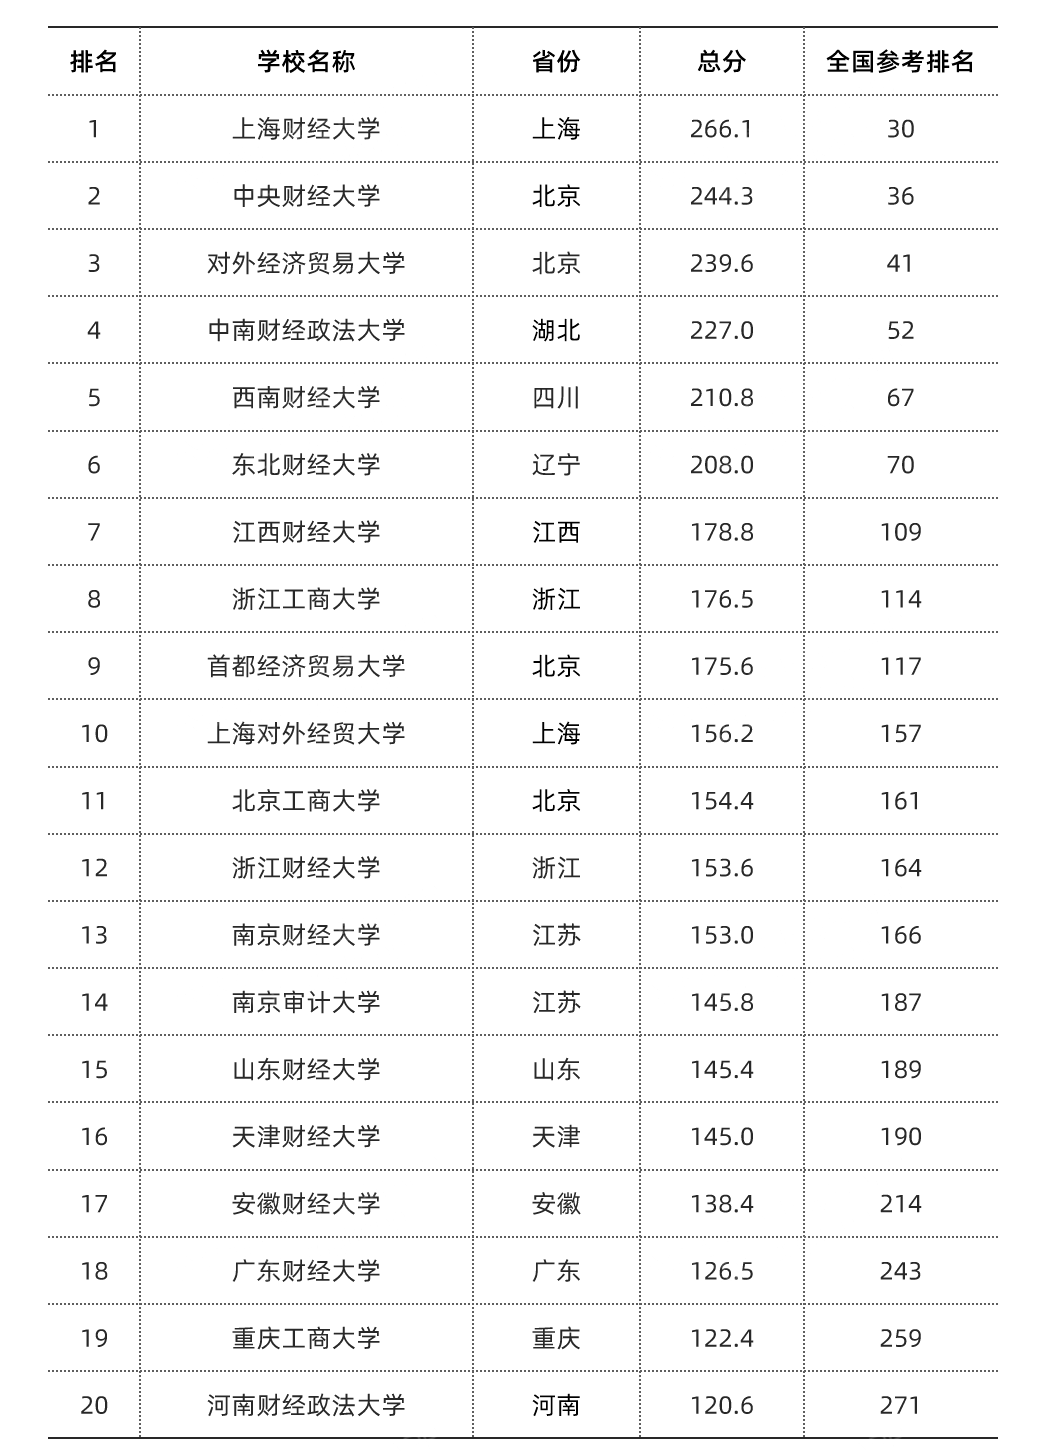 2020中国财经类大学排名(前20)